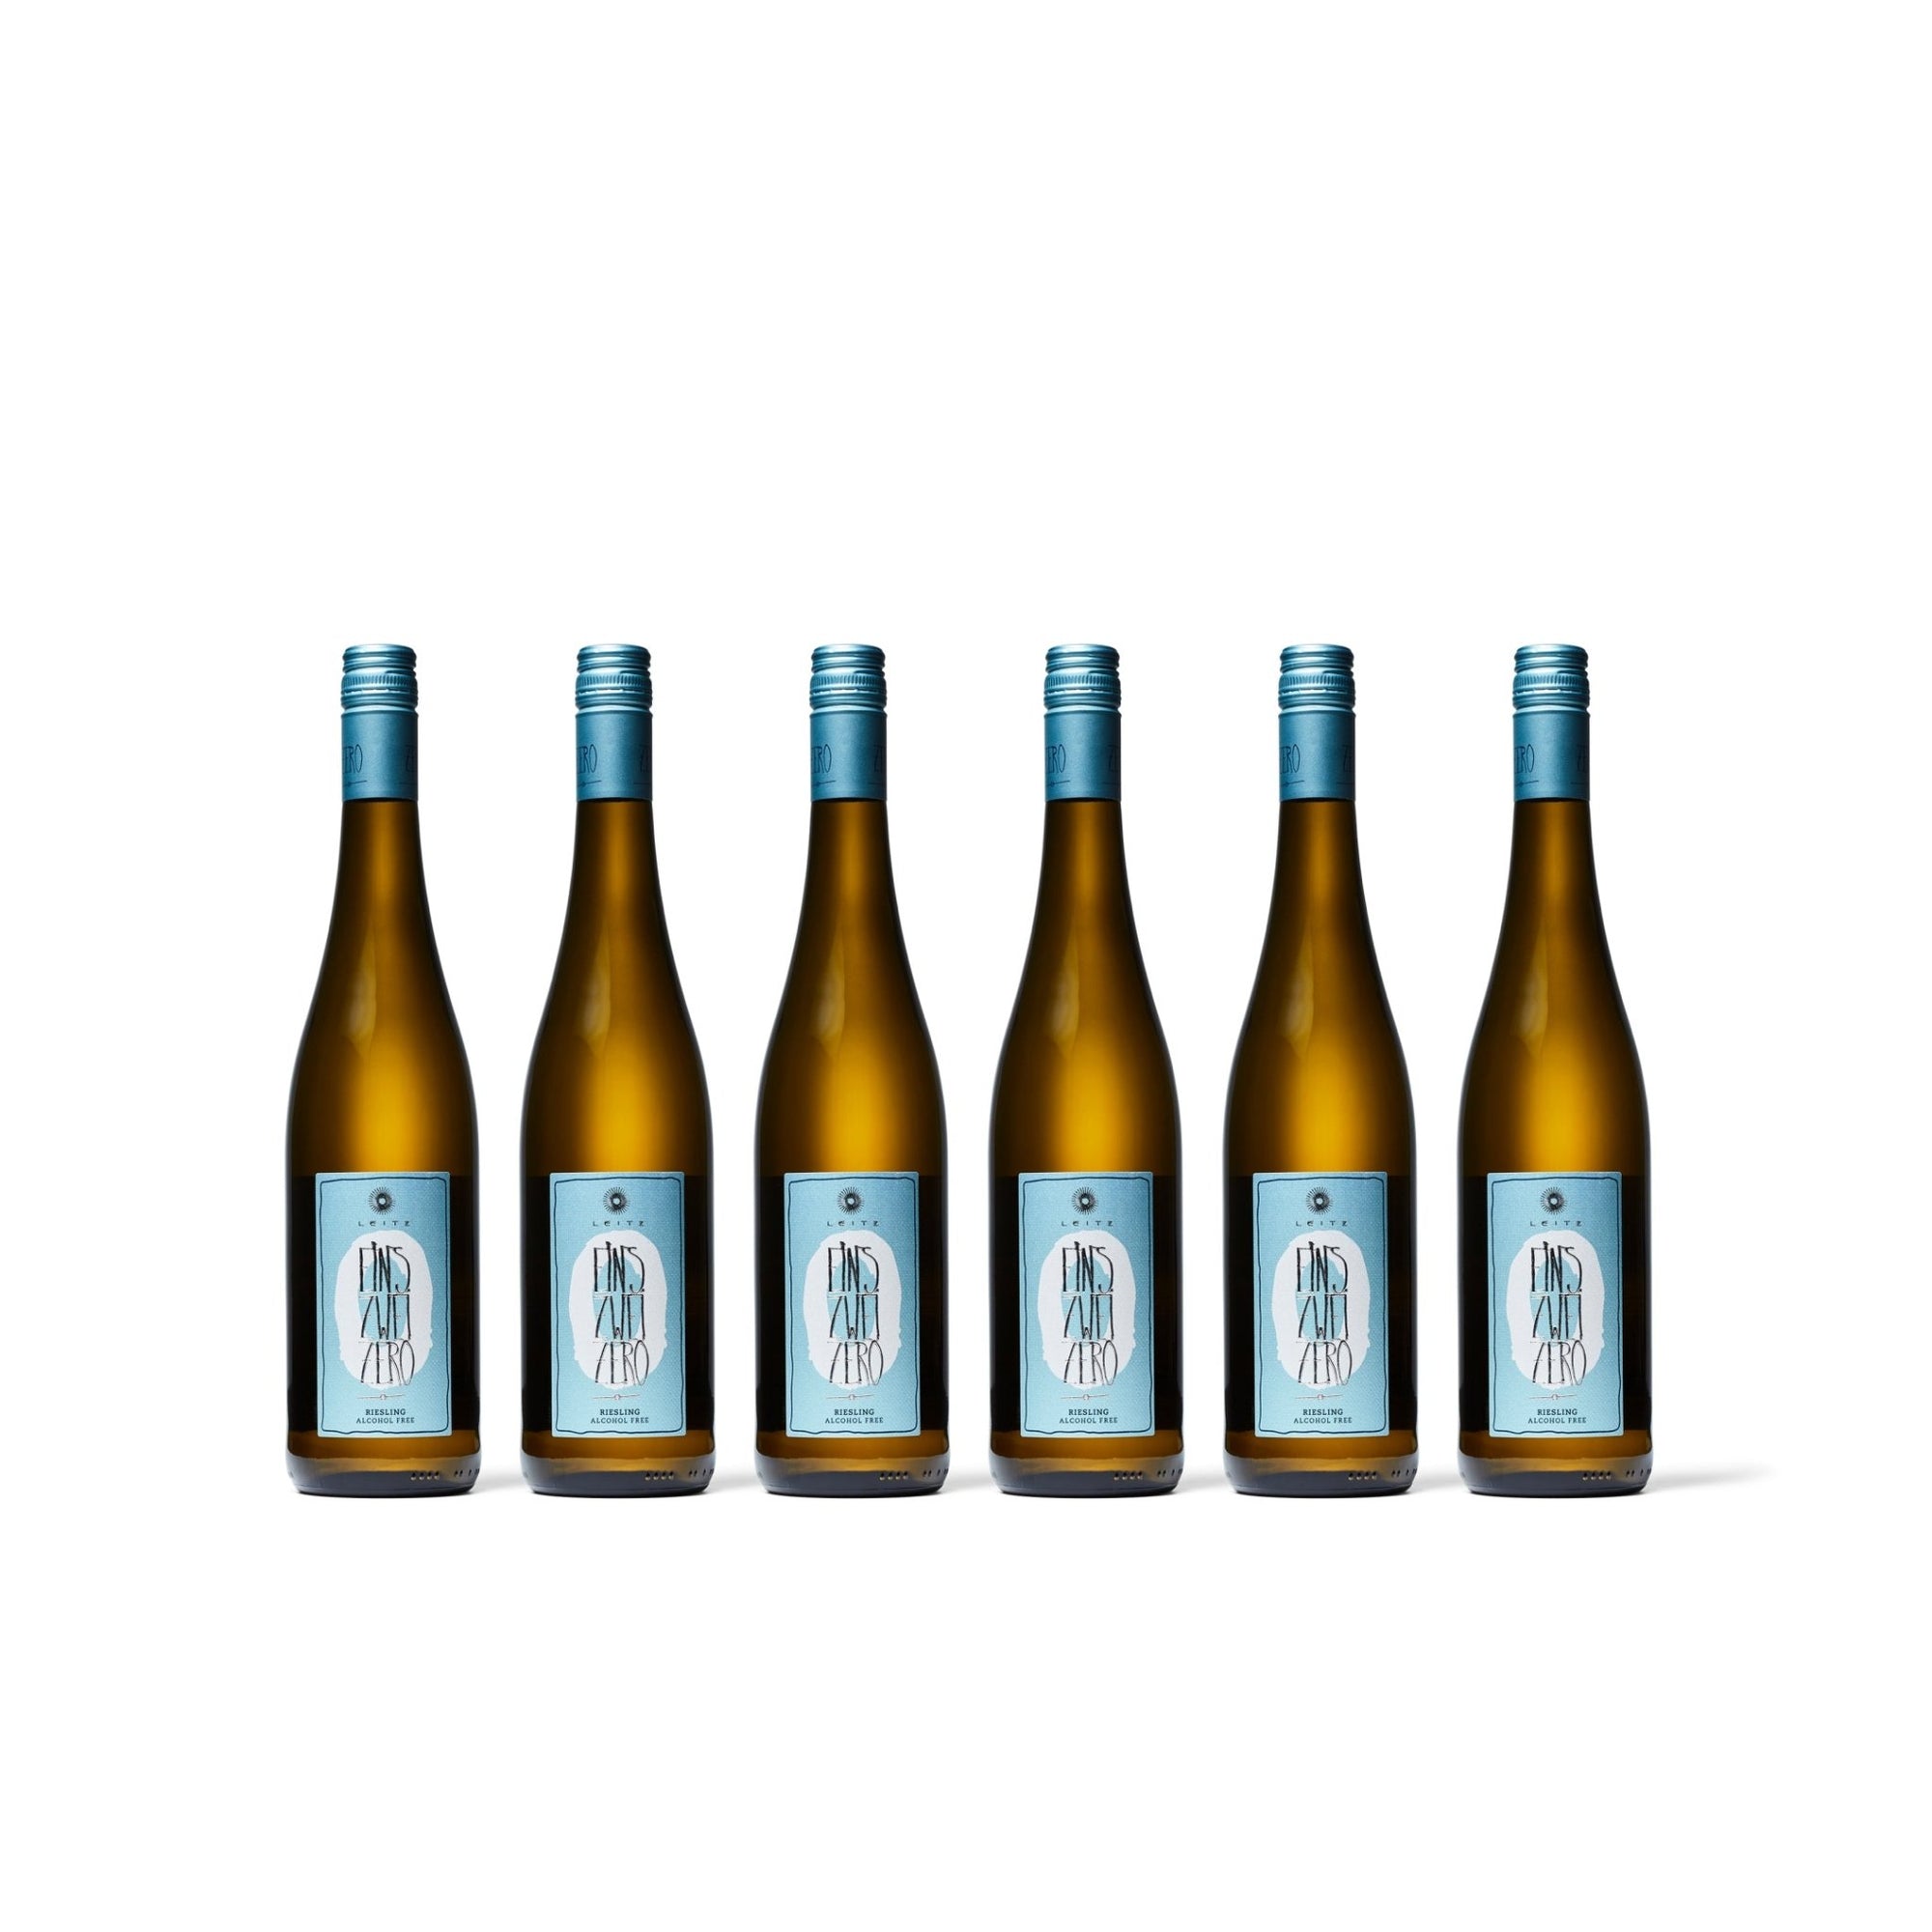 Leitz - Eins Zwei Zero Riesling Non-Alcoholic White Wine - Boisson